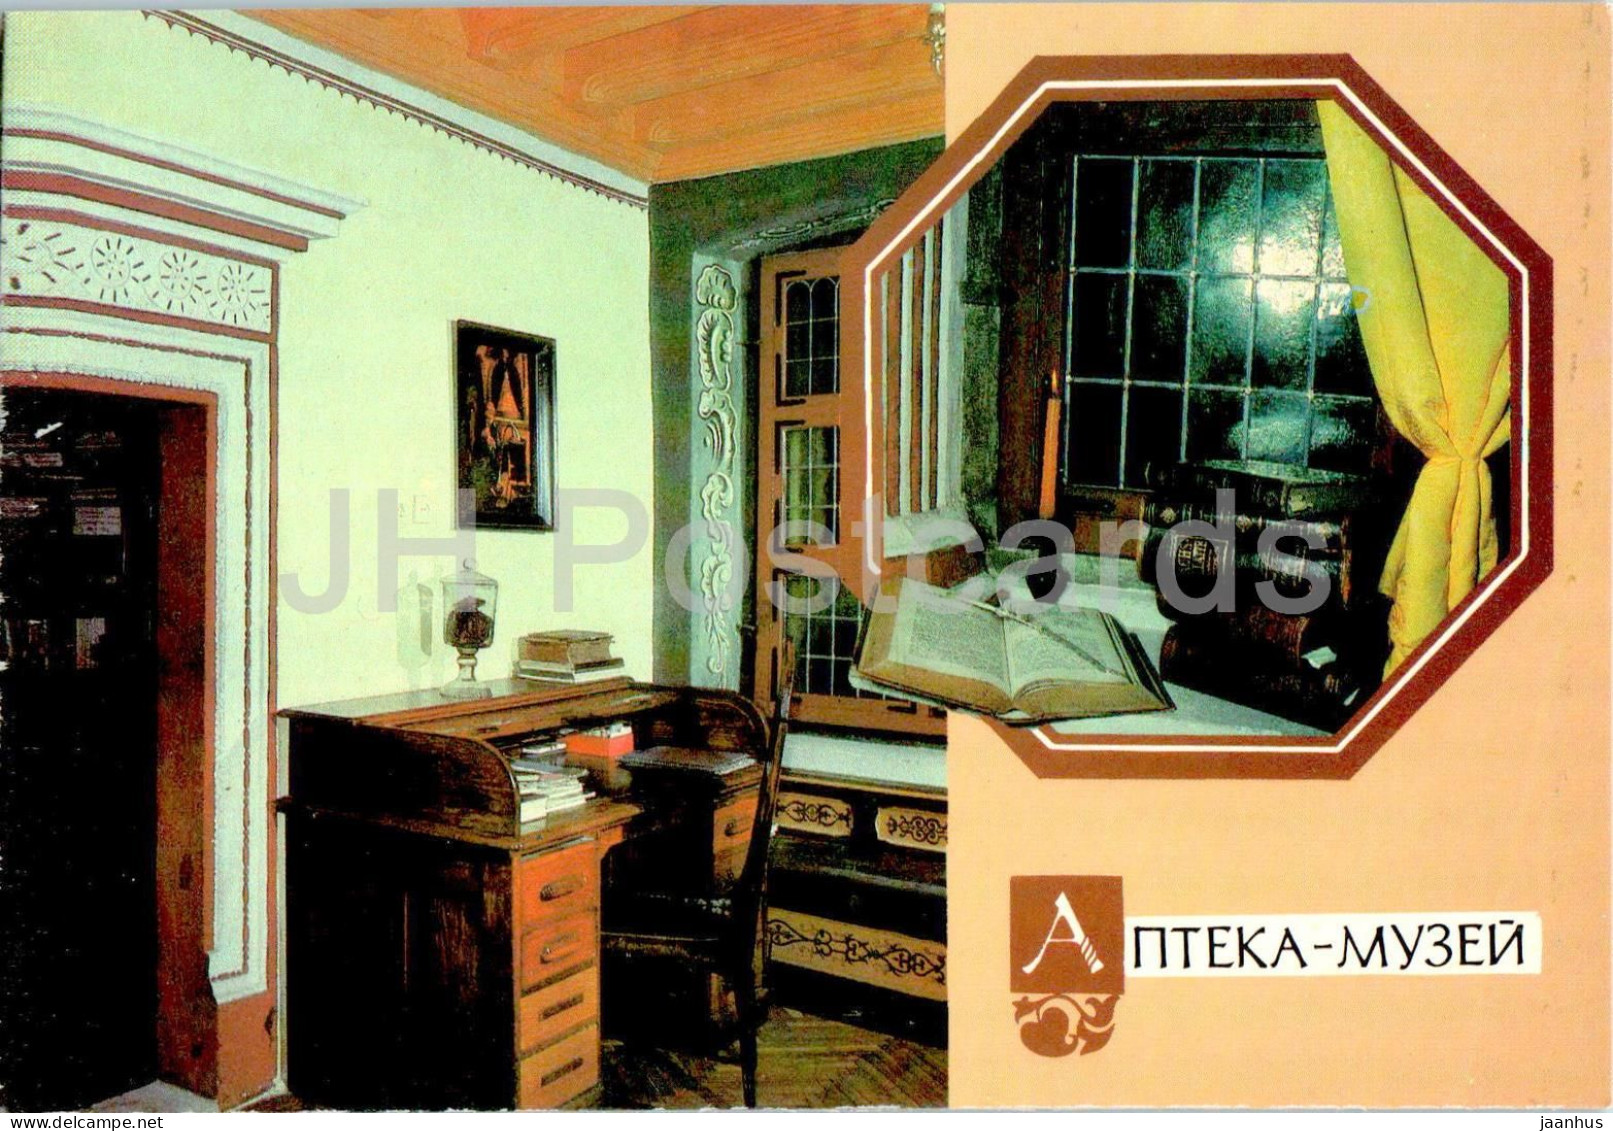 Lviv - Pharmacy Museum - Pharmacist Desk - Postal Stationery - 1991 - Ukraine USSR - Unused - Ukraine